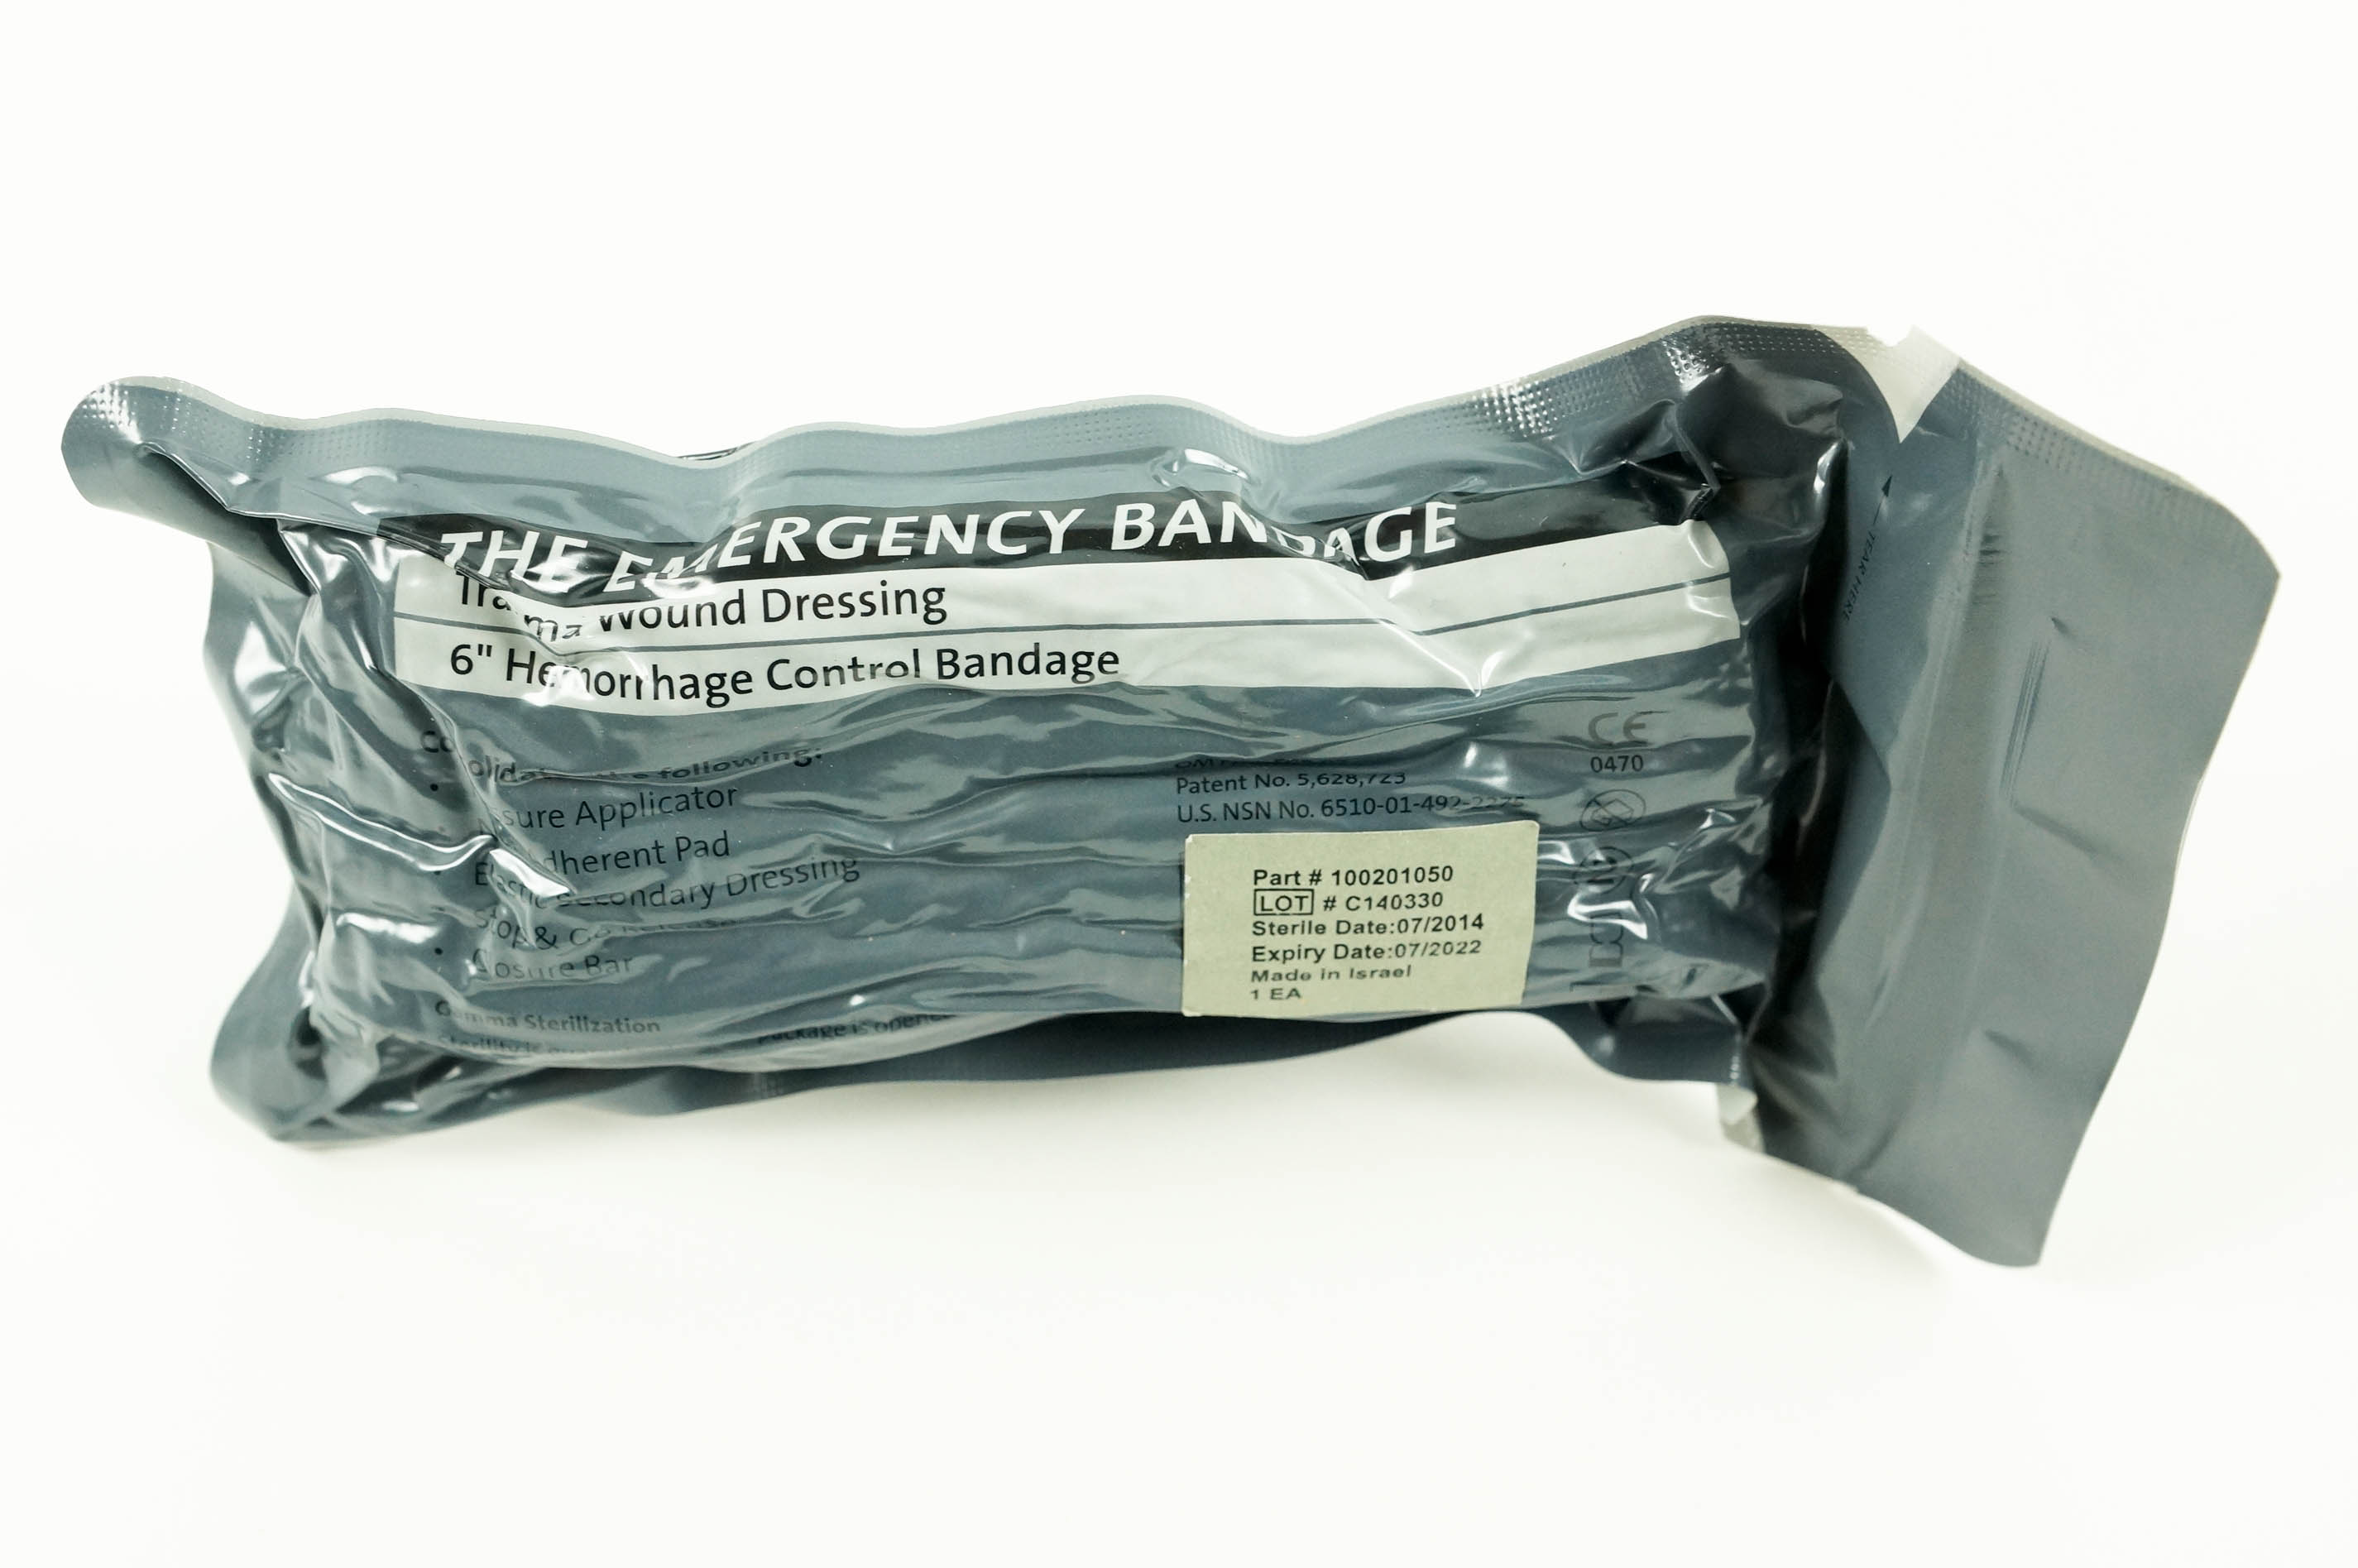 Israeli Bandage - Emergency Bandage with Pressure Bar - 6 Inch